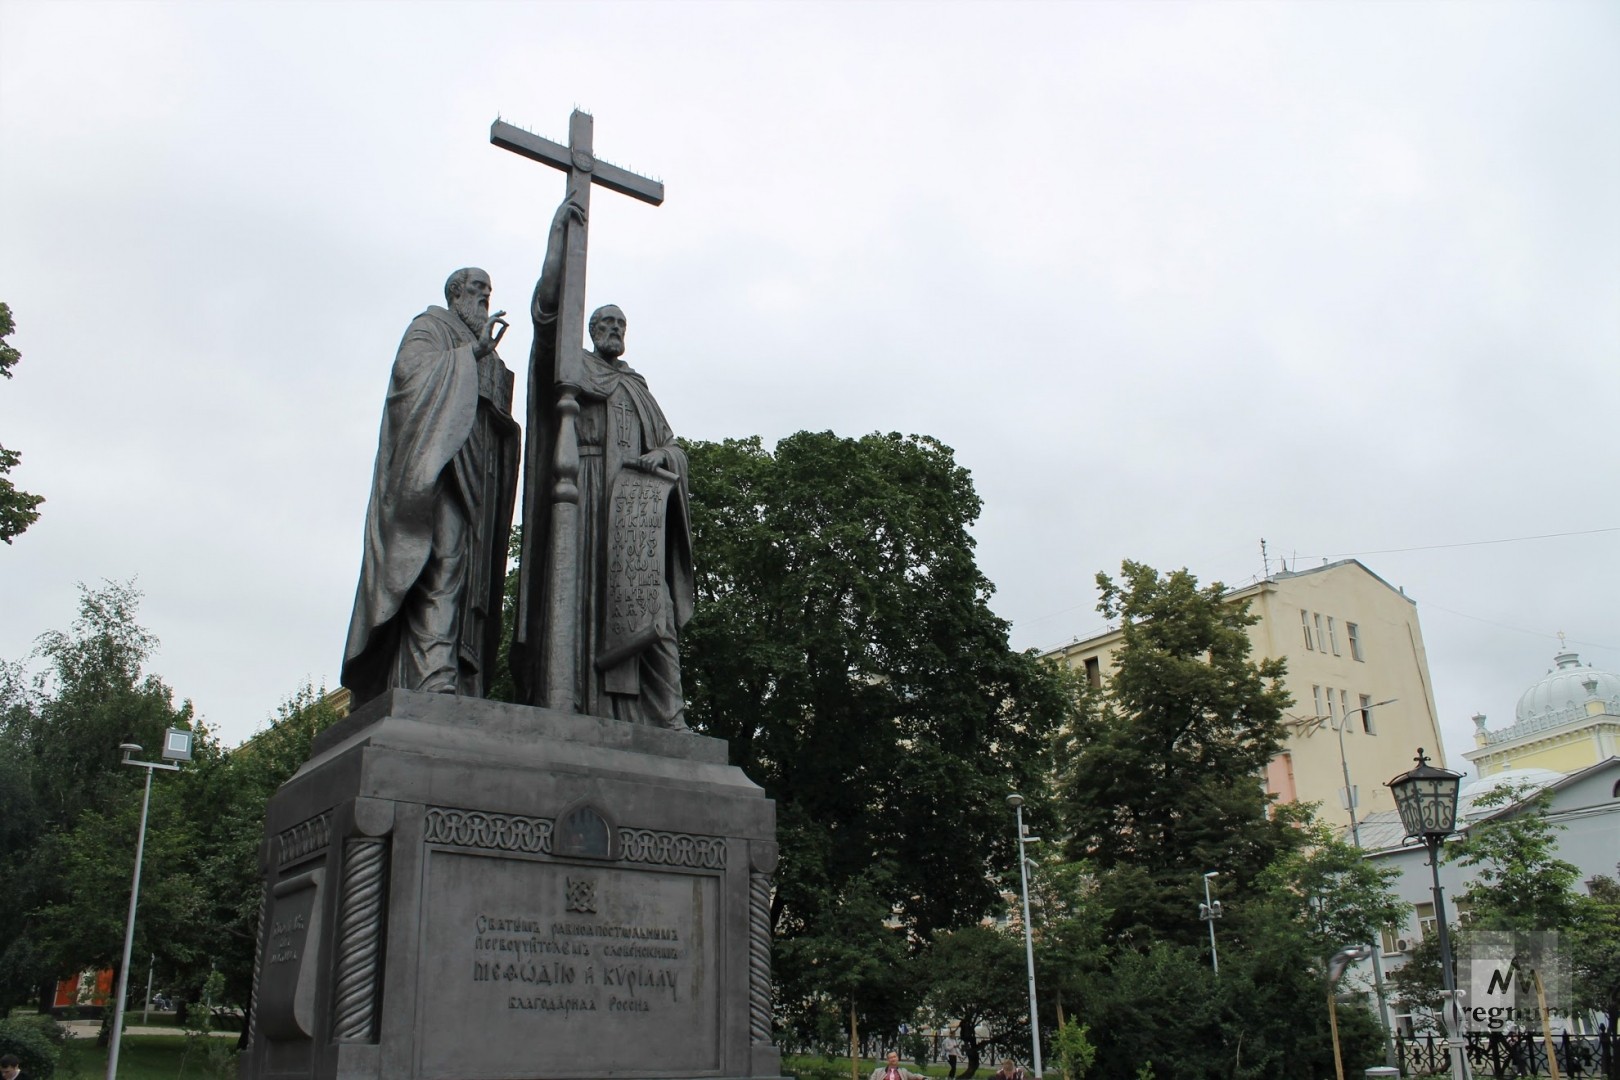 Кирилл и мефодий в москве